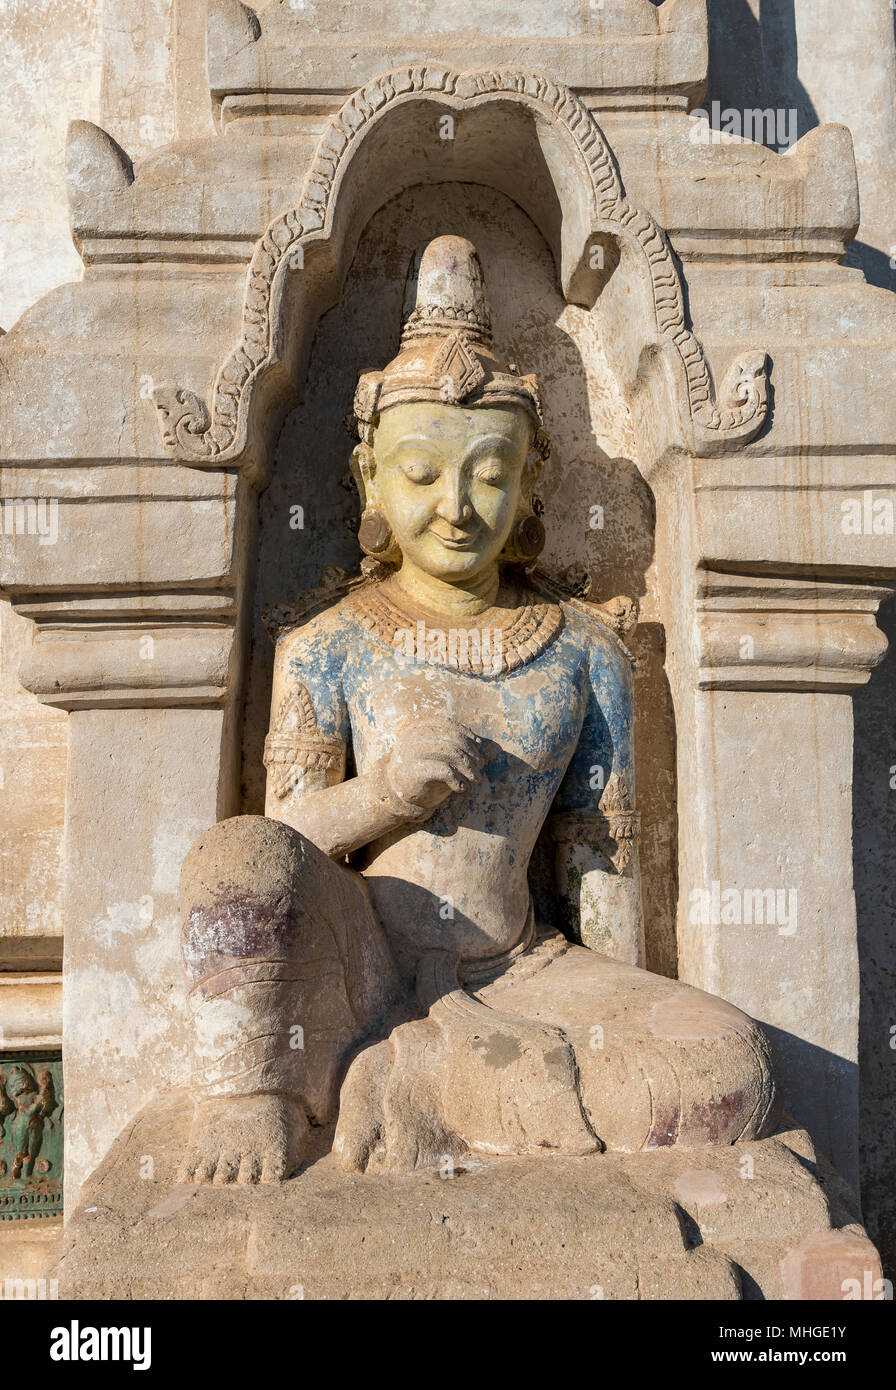 Statue at Ananda Temple, Bagan, Myanmar (Burma) Stock Photo